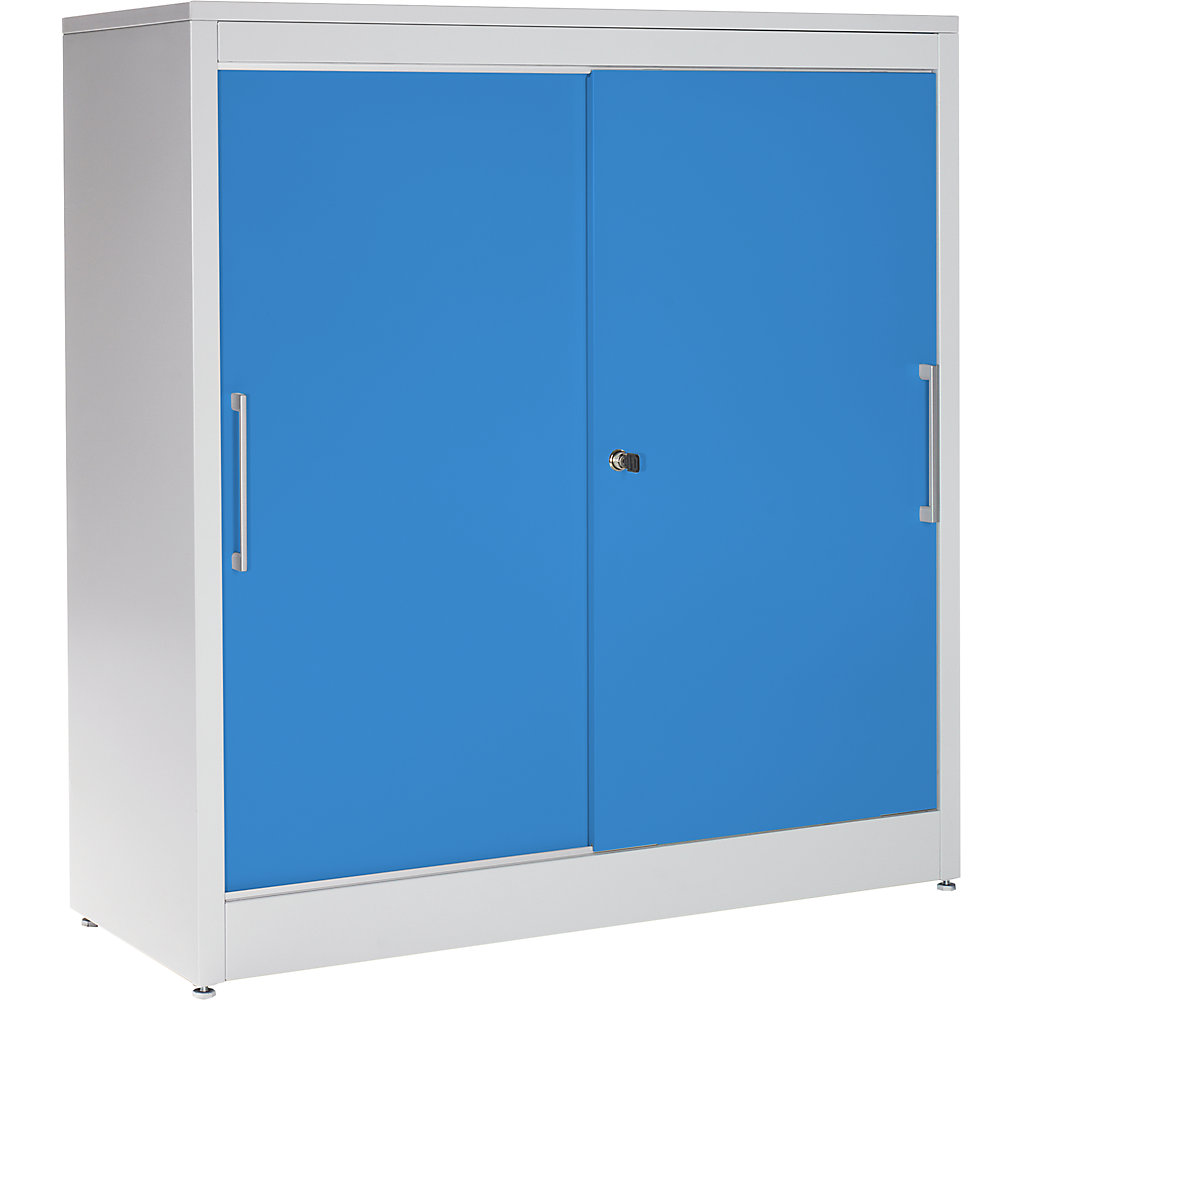 mauser – Armoire à portes coulissantes, armoire basse, 2 tablettes, h x l x p 1240 x 1200 x 420 mm, gris clair / bleu clair